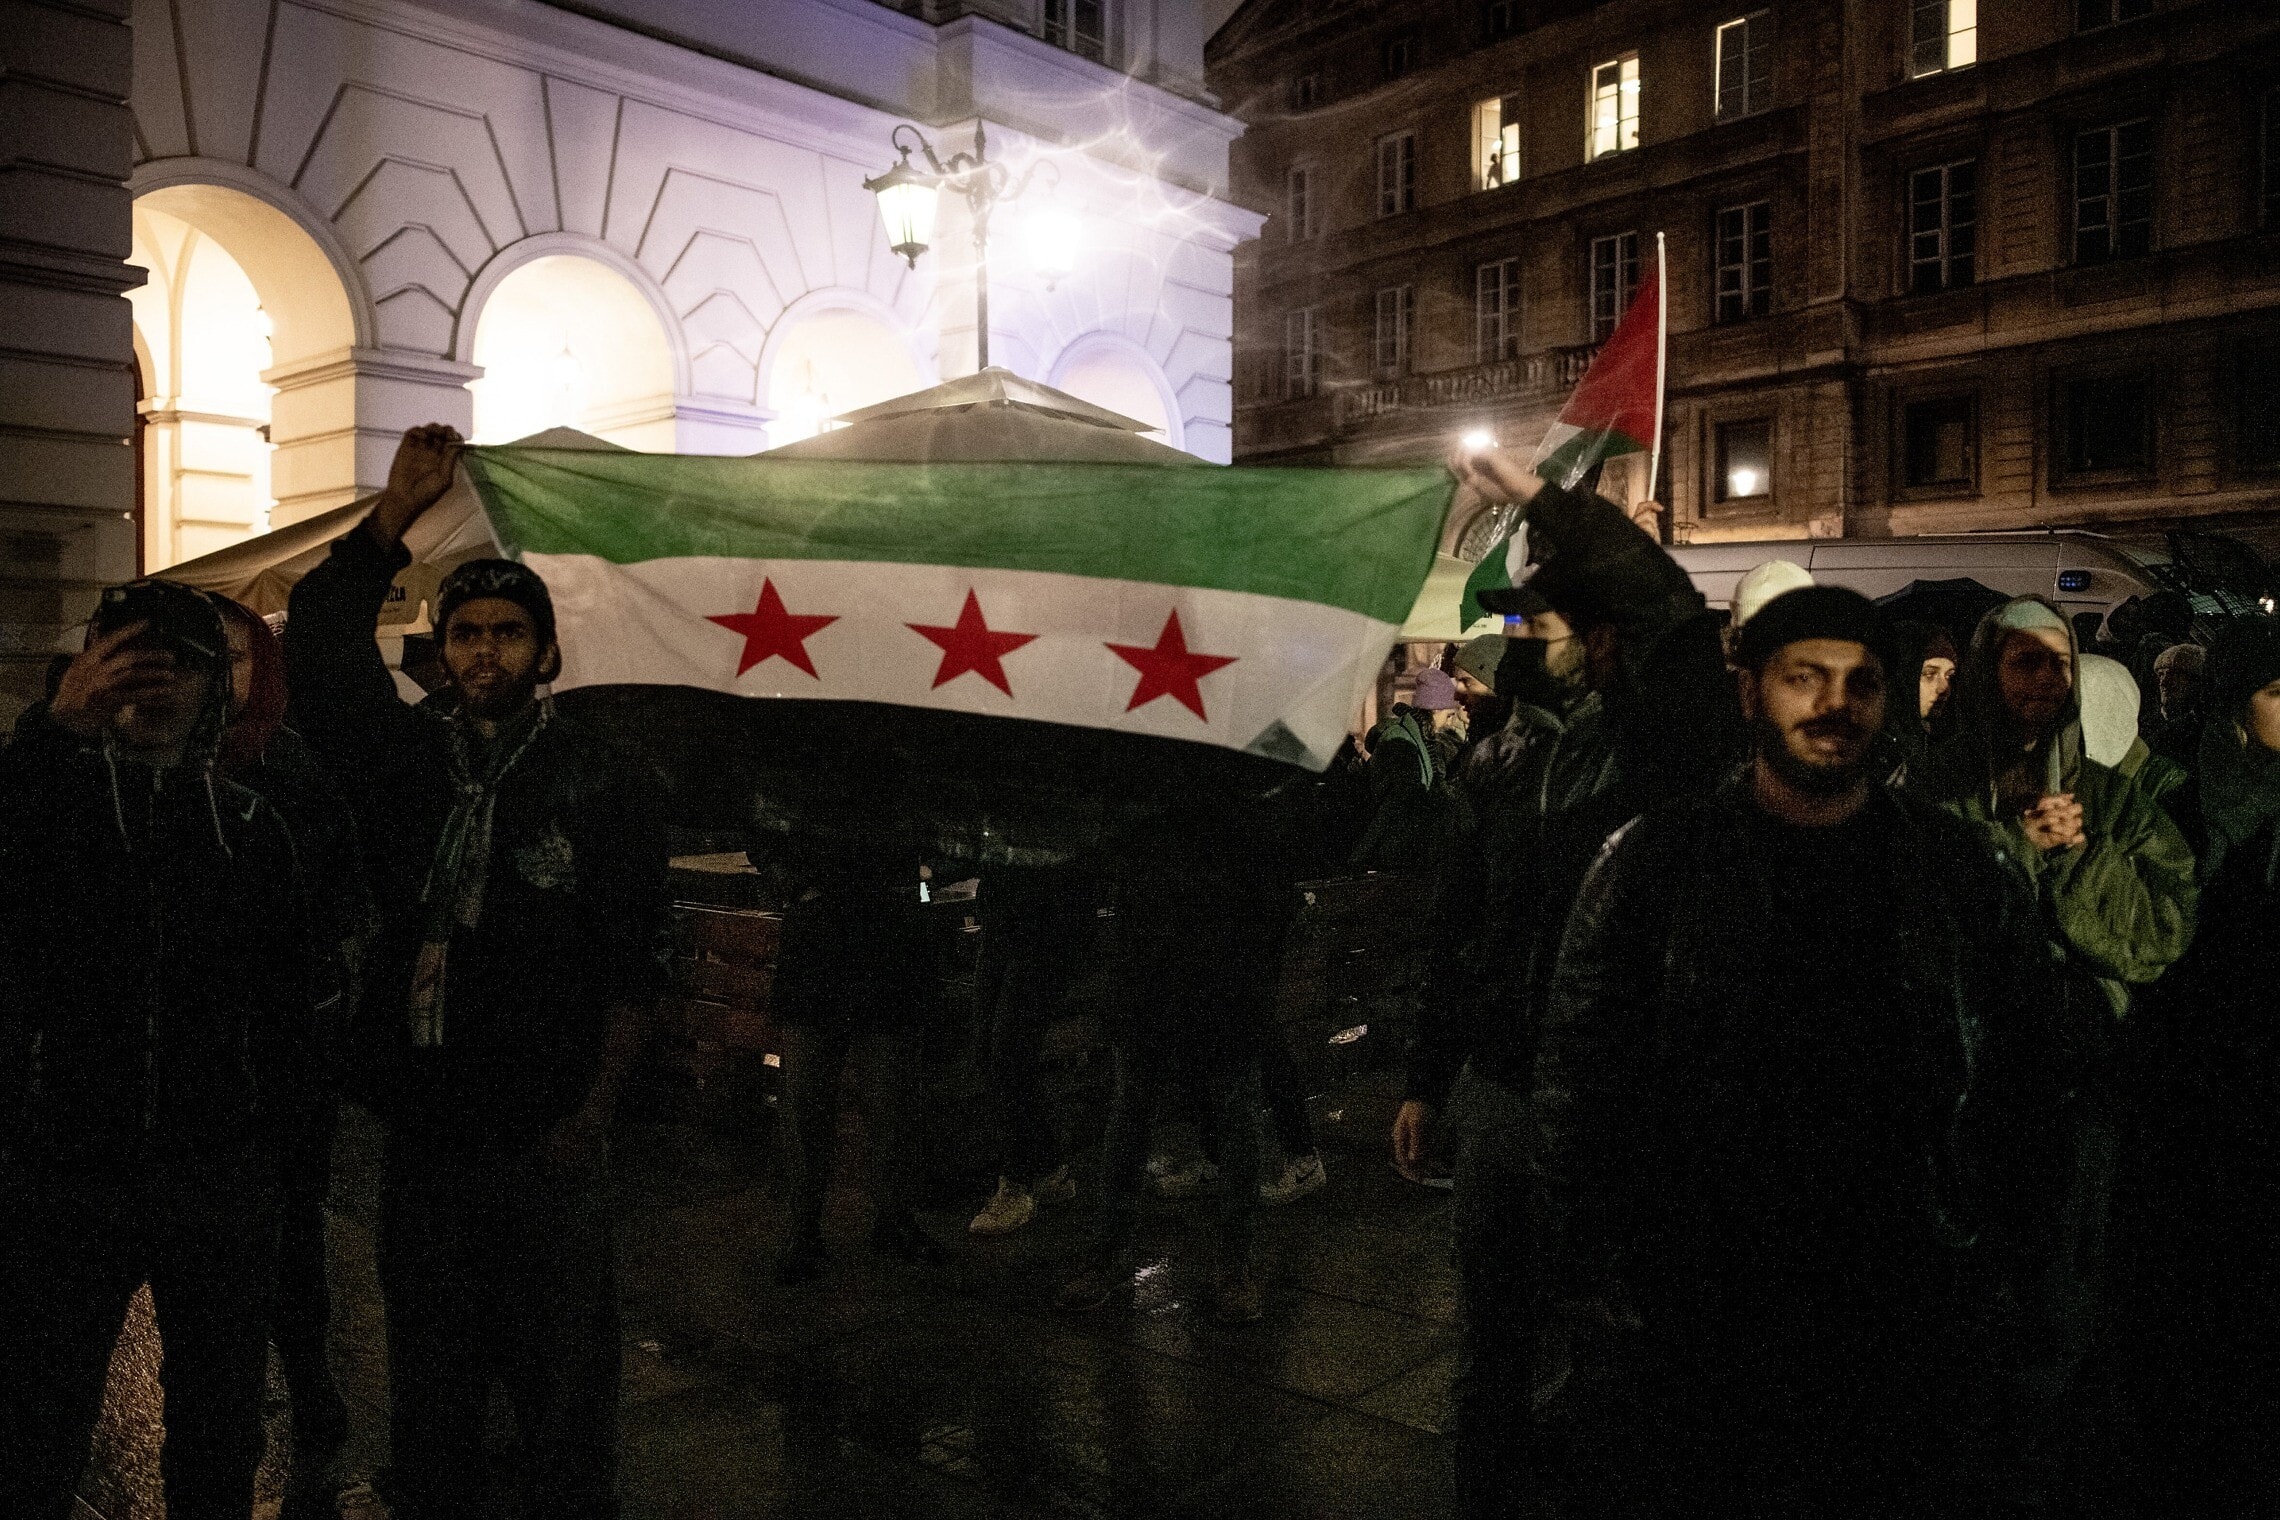 מפגינים פרו־פלסטינים מניפים את דגל סוריה החופשית בוורשה, פולין, 20 באוקטובר 2023 (צילום: גילעד שדה)